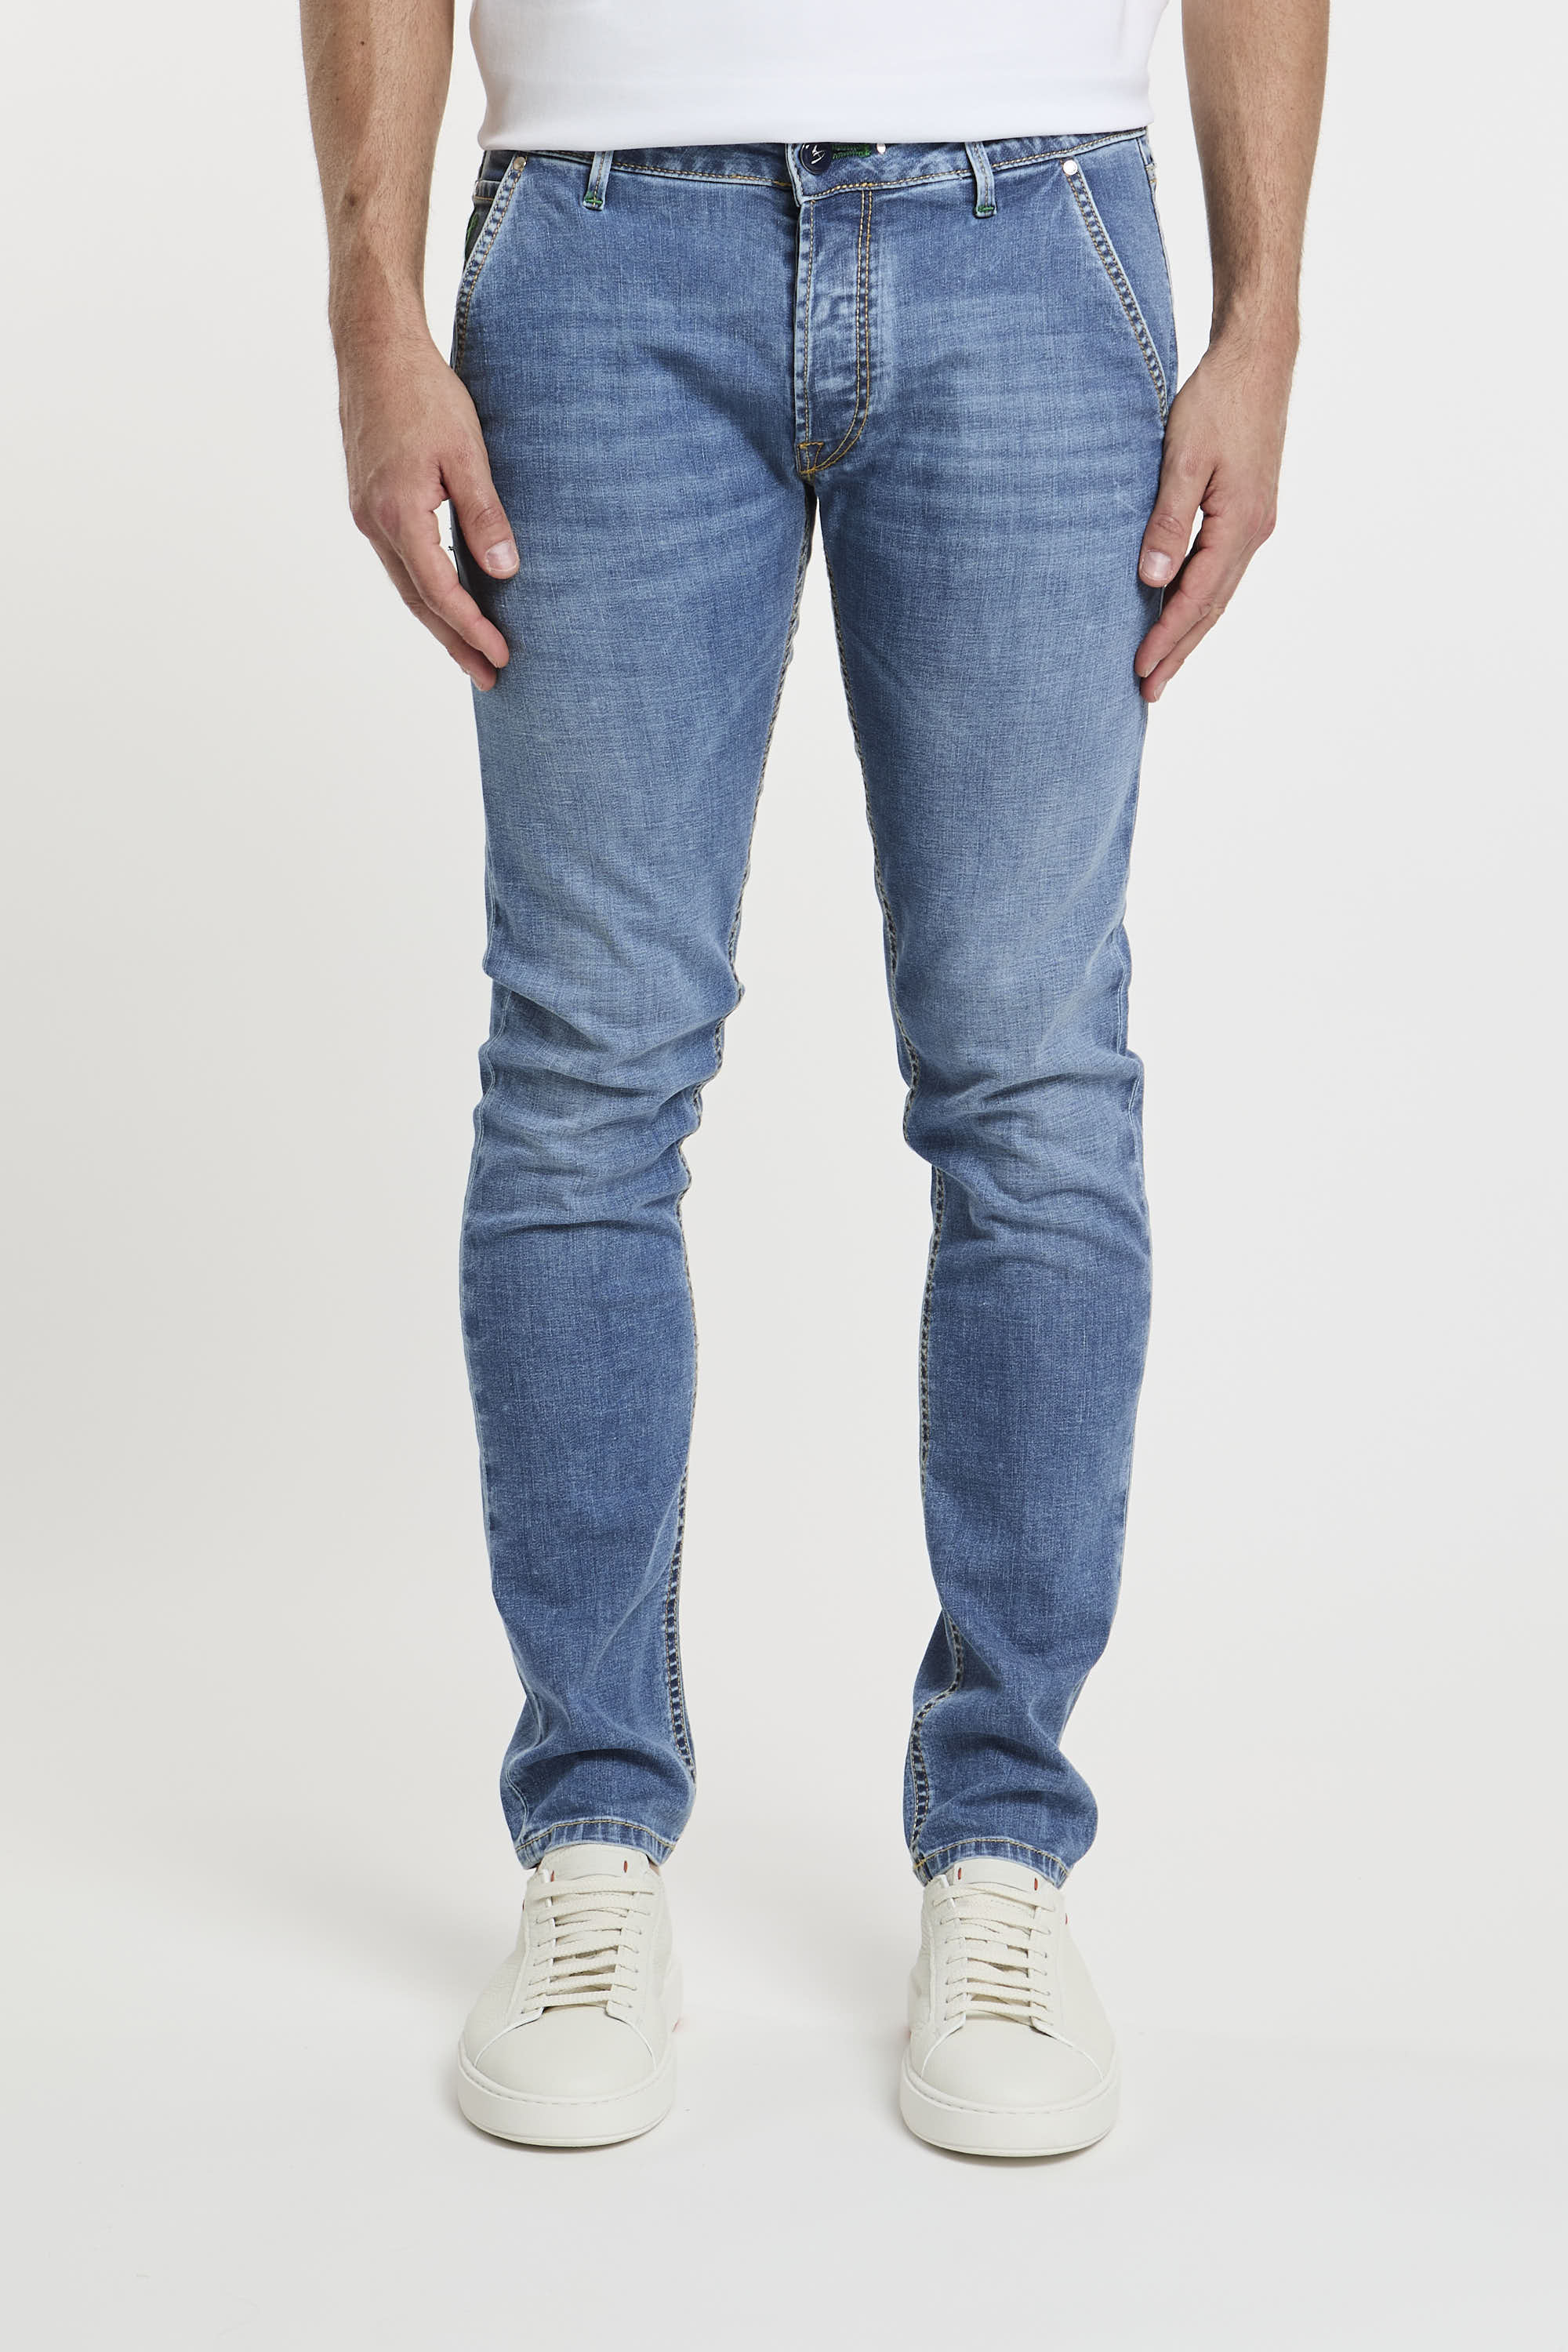 Jeans Parma-1